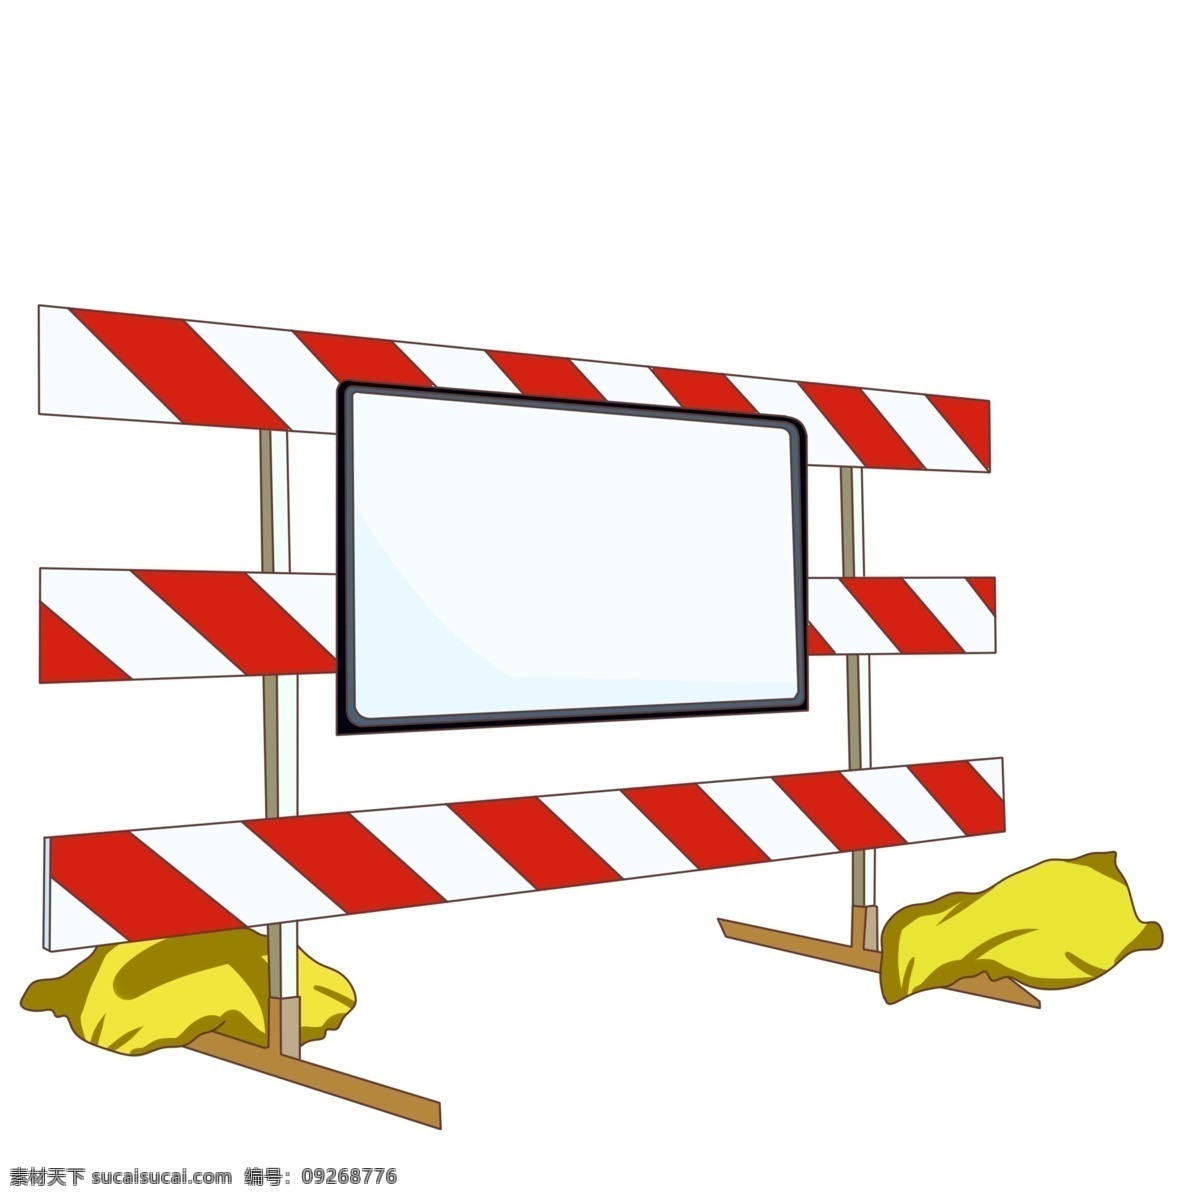 路障 封闭 禁止 标志 安全 交通 障碍 限制 施工 保护 路标 警示牌 黄色沙袋插画